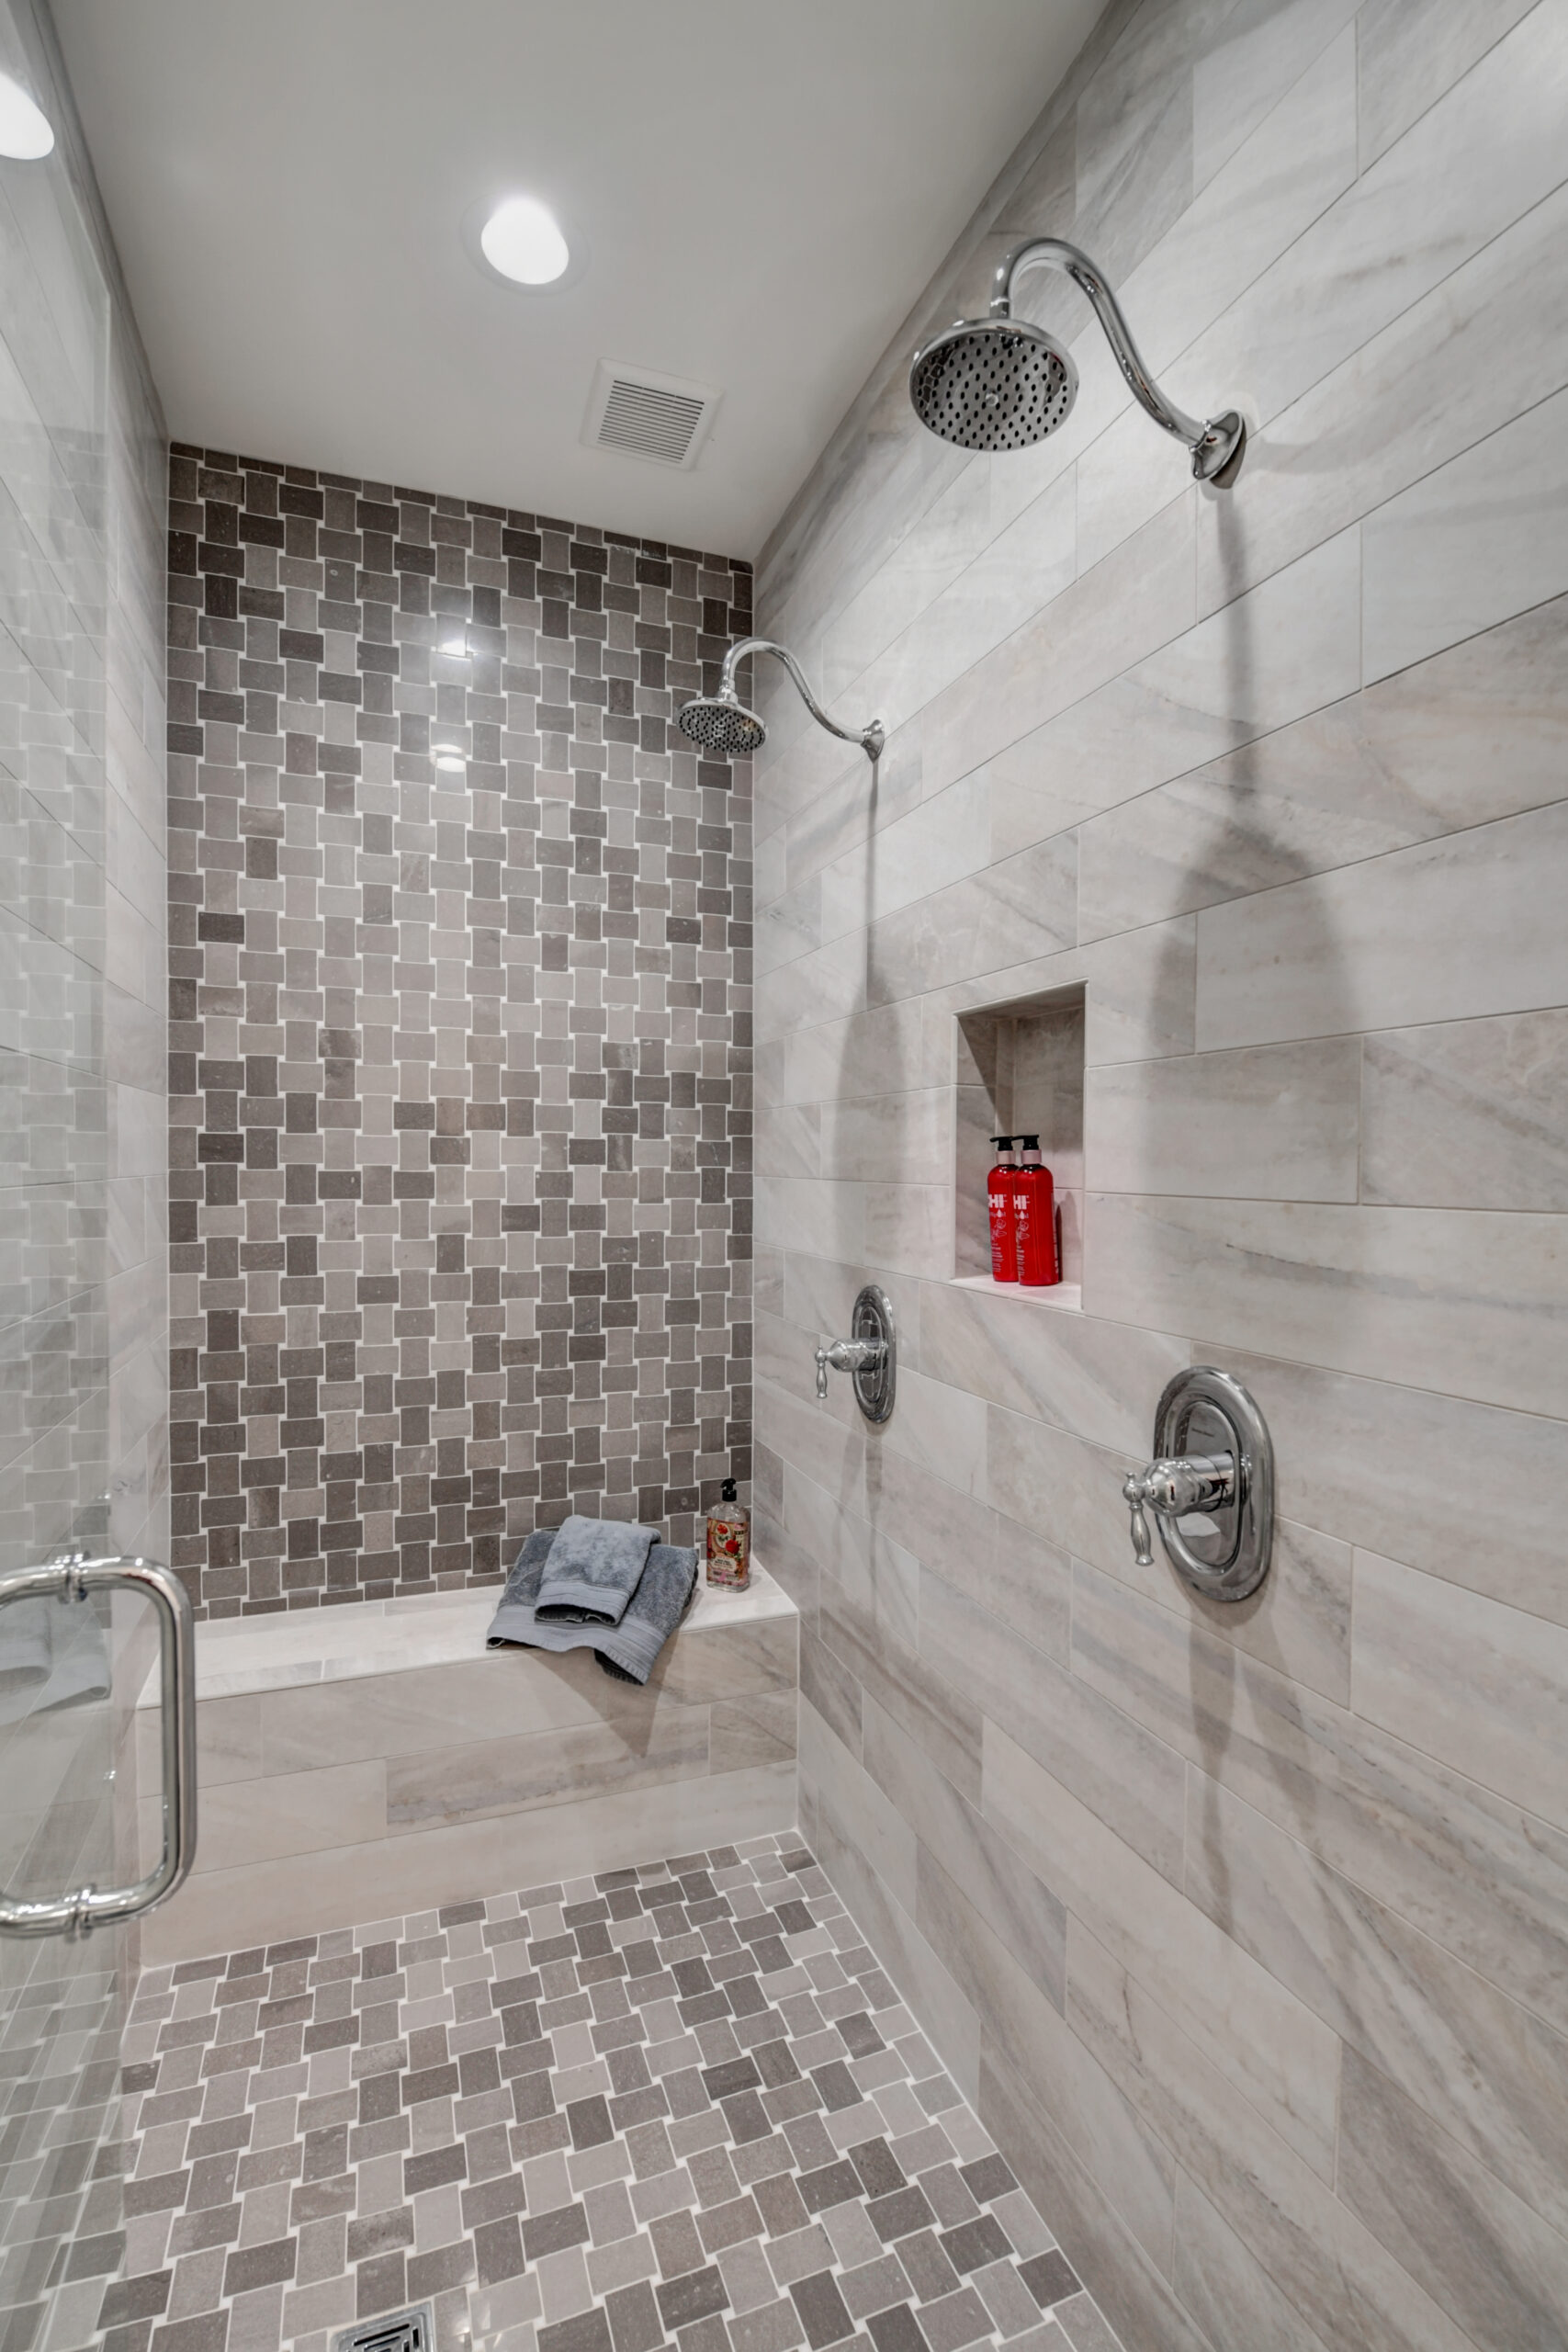 Custom bath tile design in gray